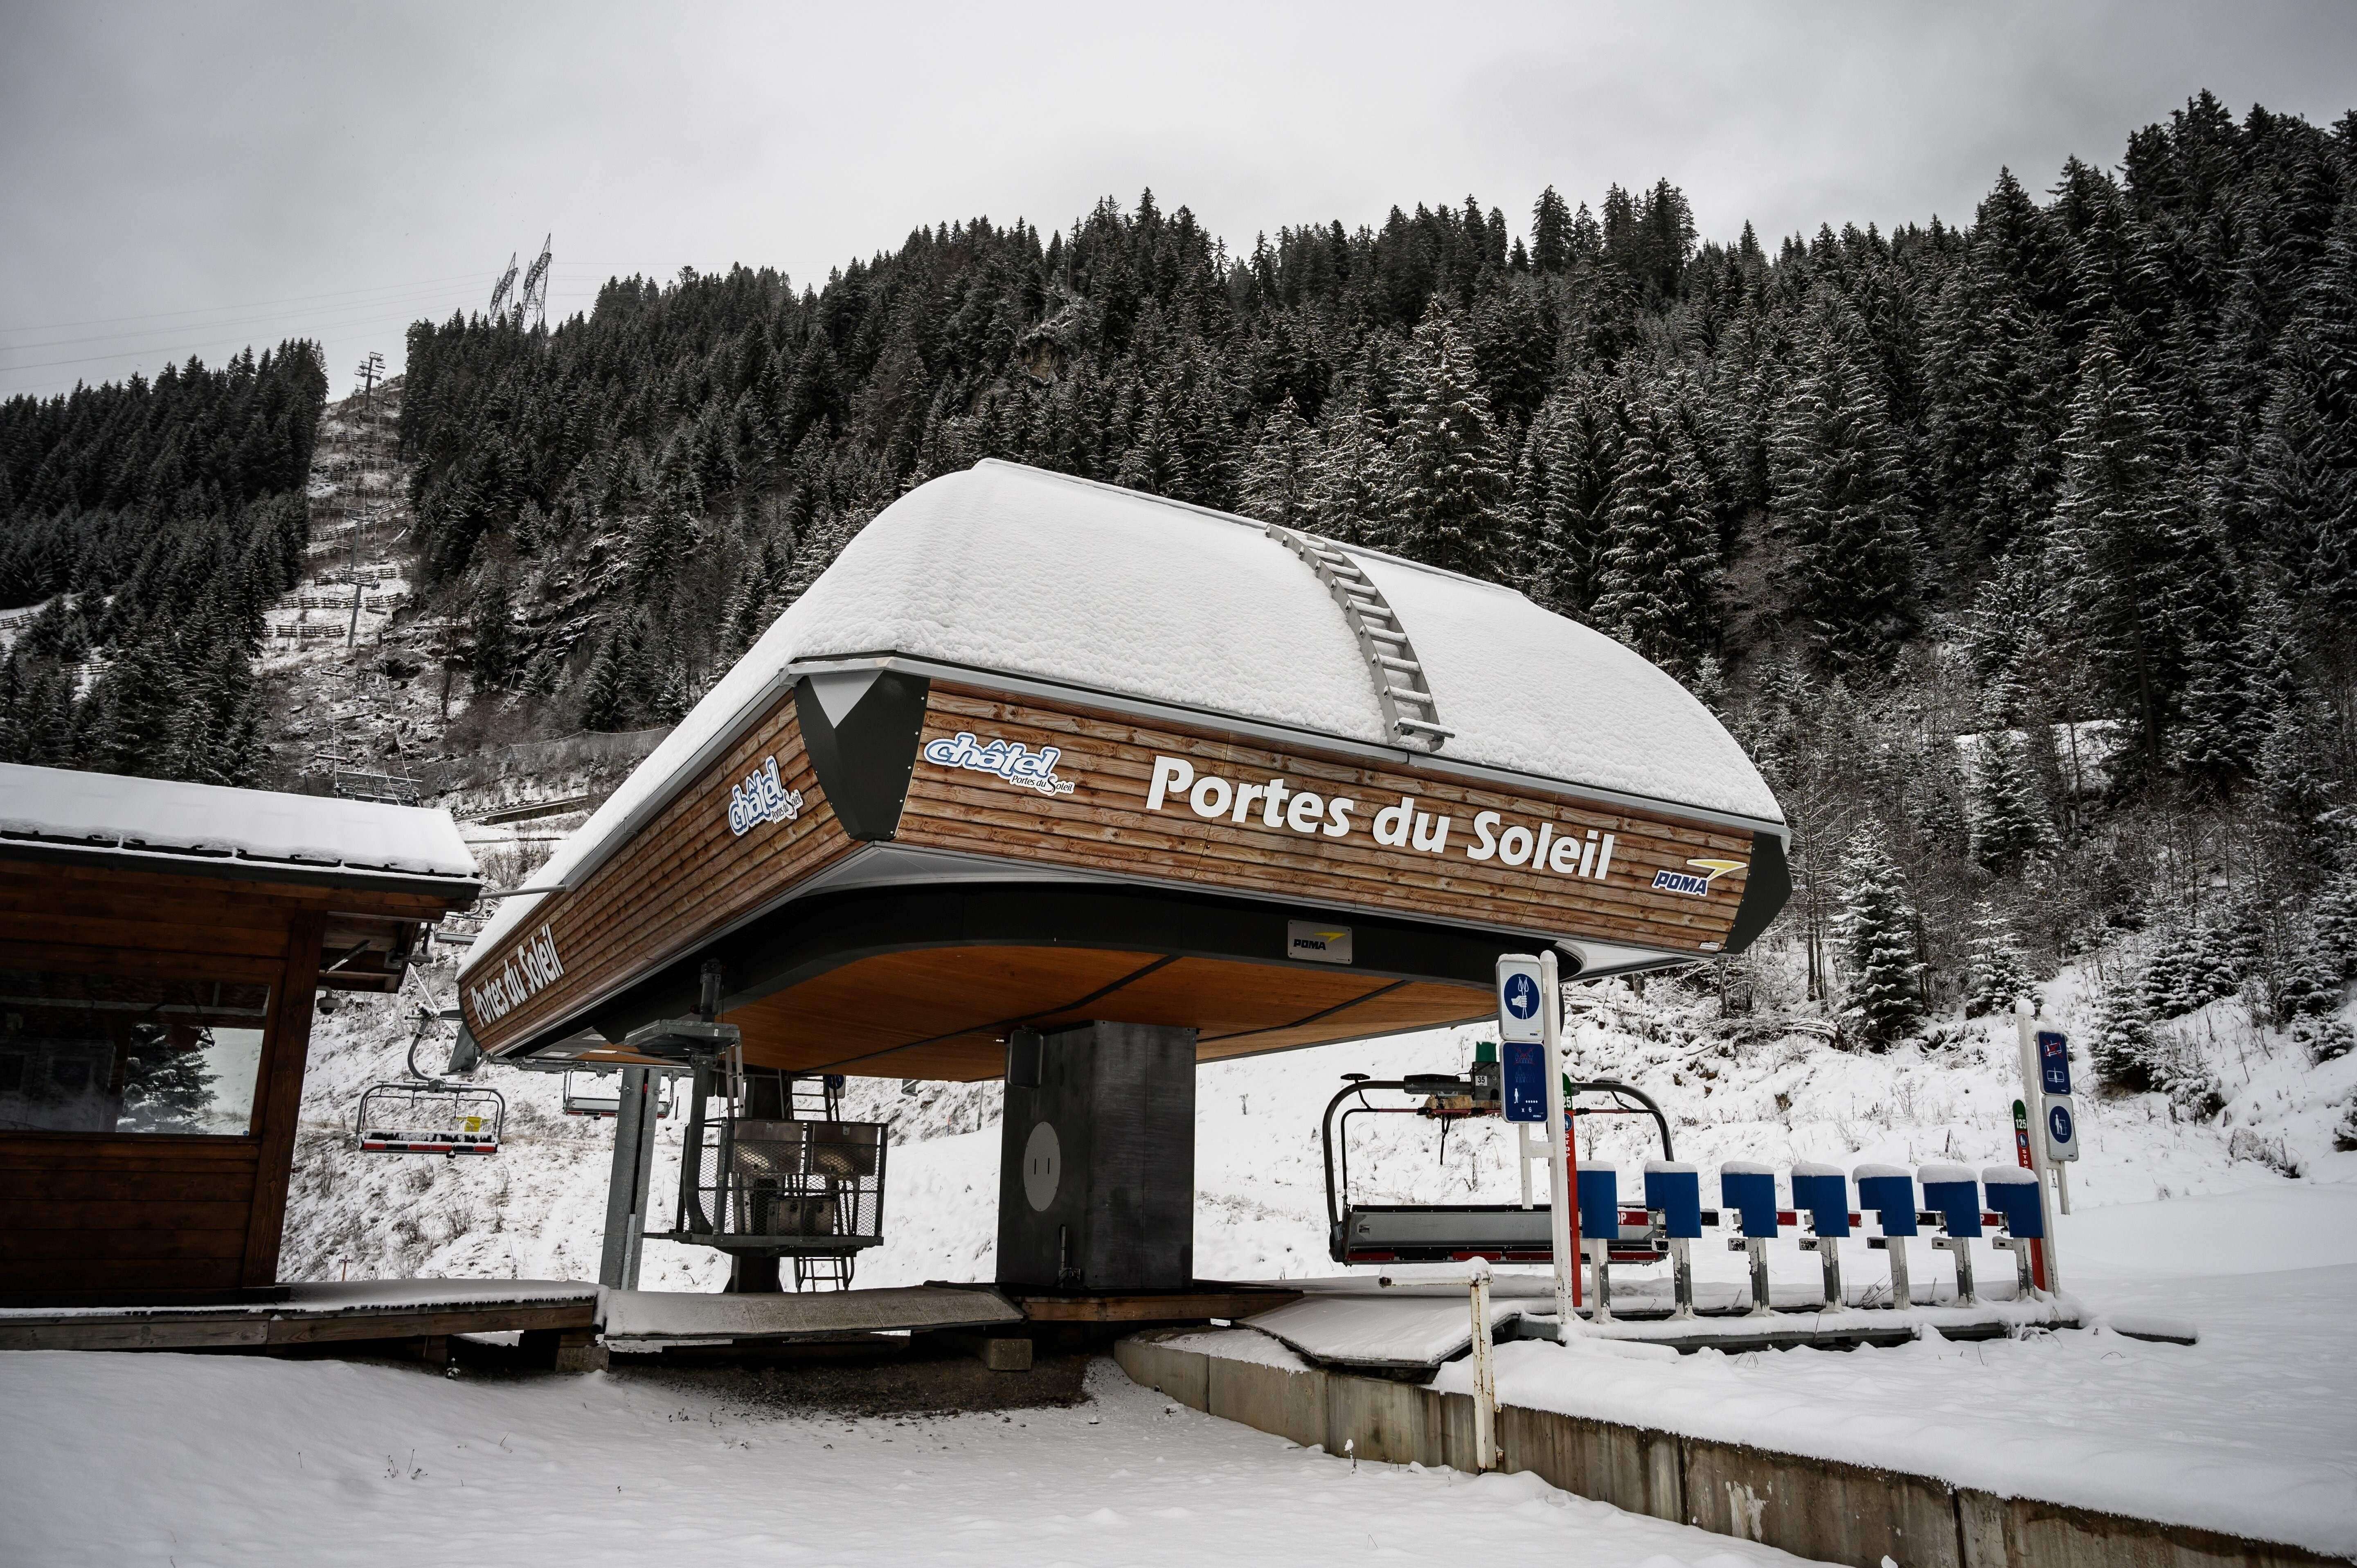 En France, les stations de ski en France en pourront pas ouvrir les remontées mécaniques lors des fêtes de fin d'année, et des contrôles auront lieu pour empêcher les Français d'aller skier à l'étranger (photo prise le 1er décembre à Châtel, en Haute-Savoie).